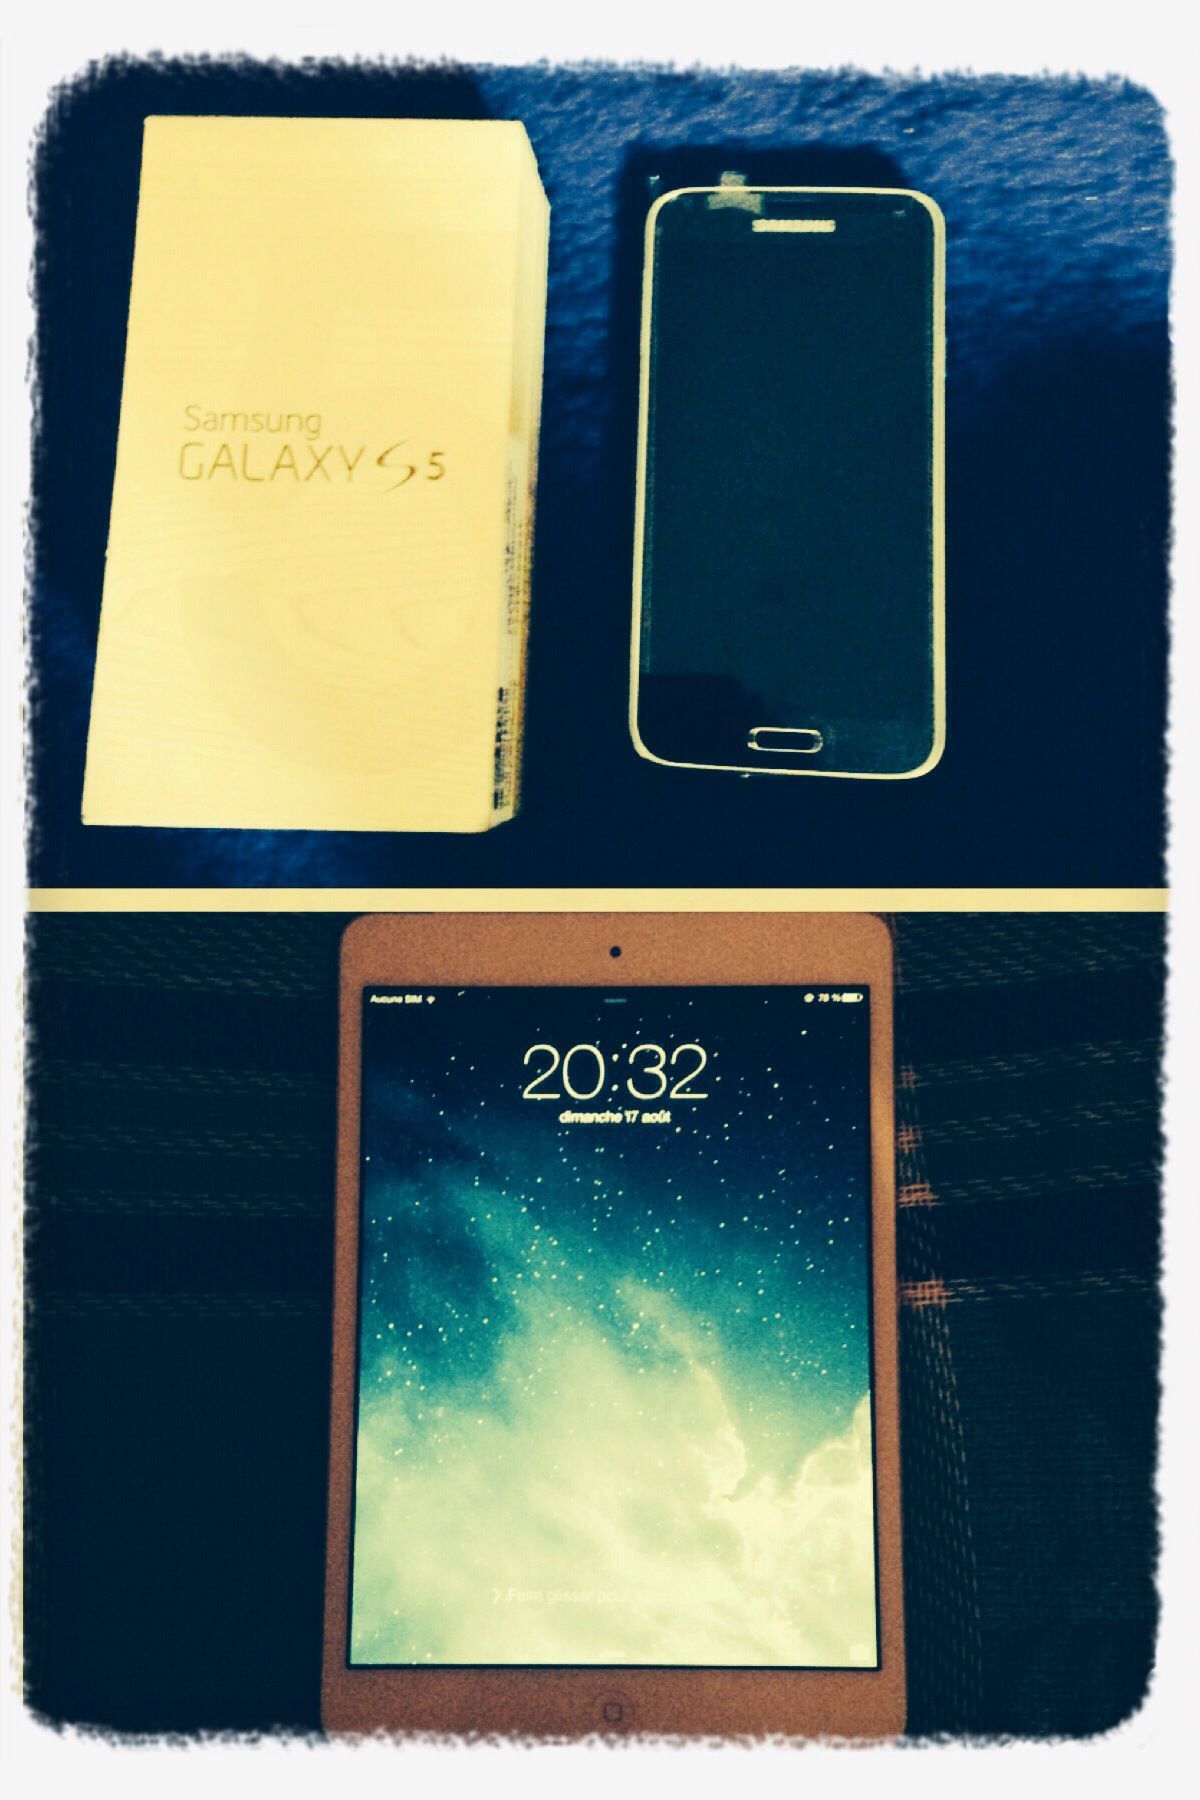 S4 and iPad 3